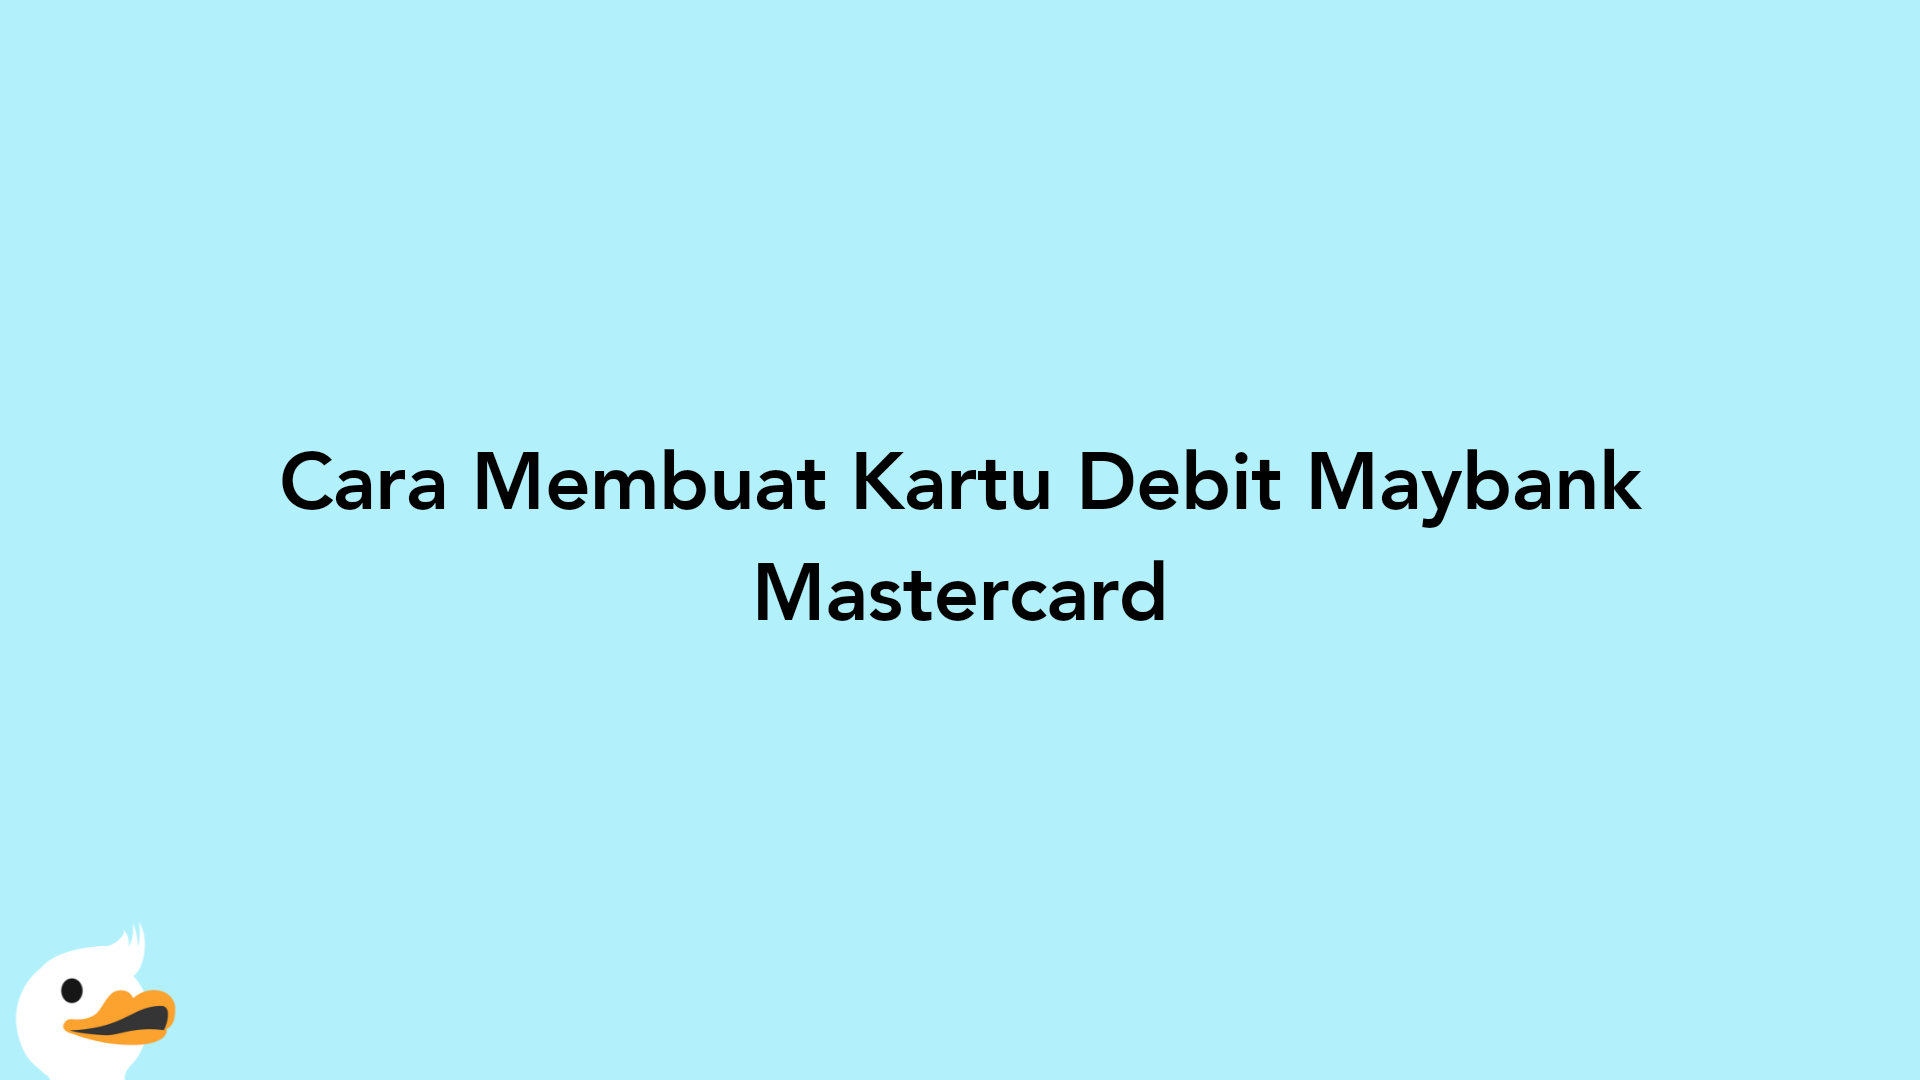 Cara Membuat Kartu Debit Maybank Mastercard